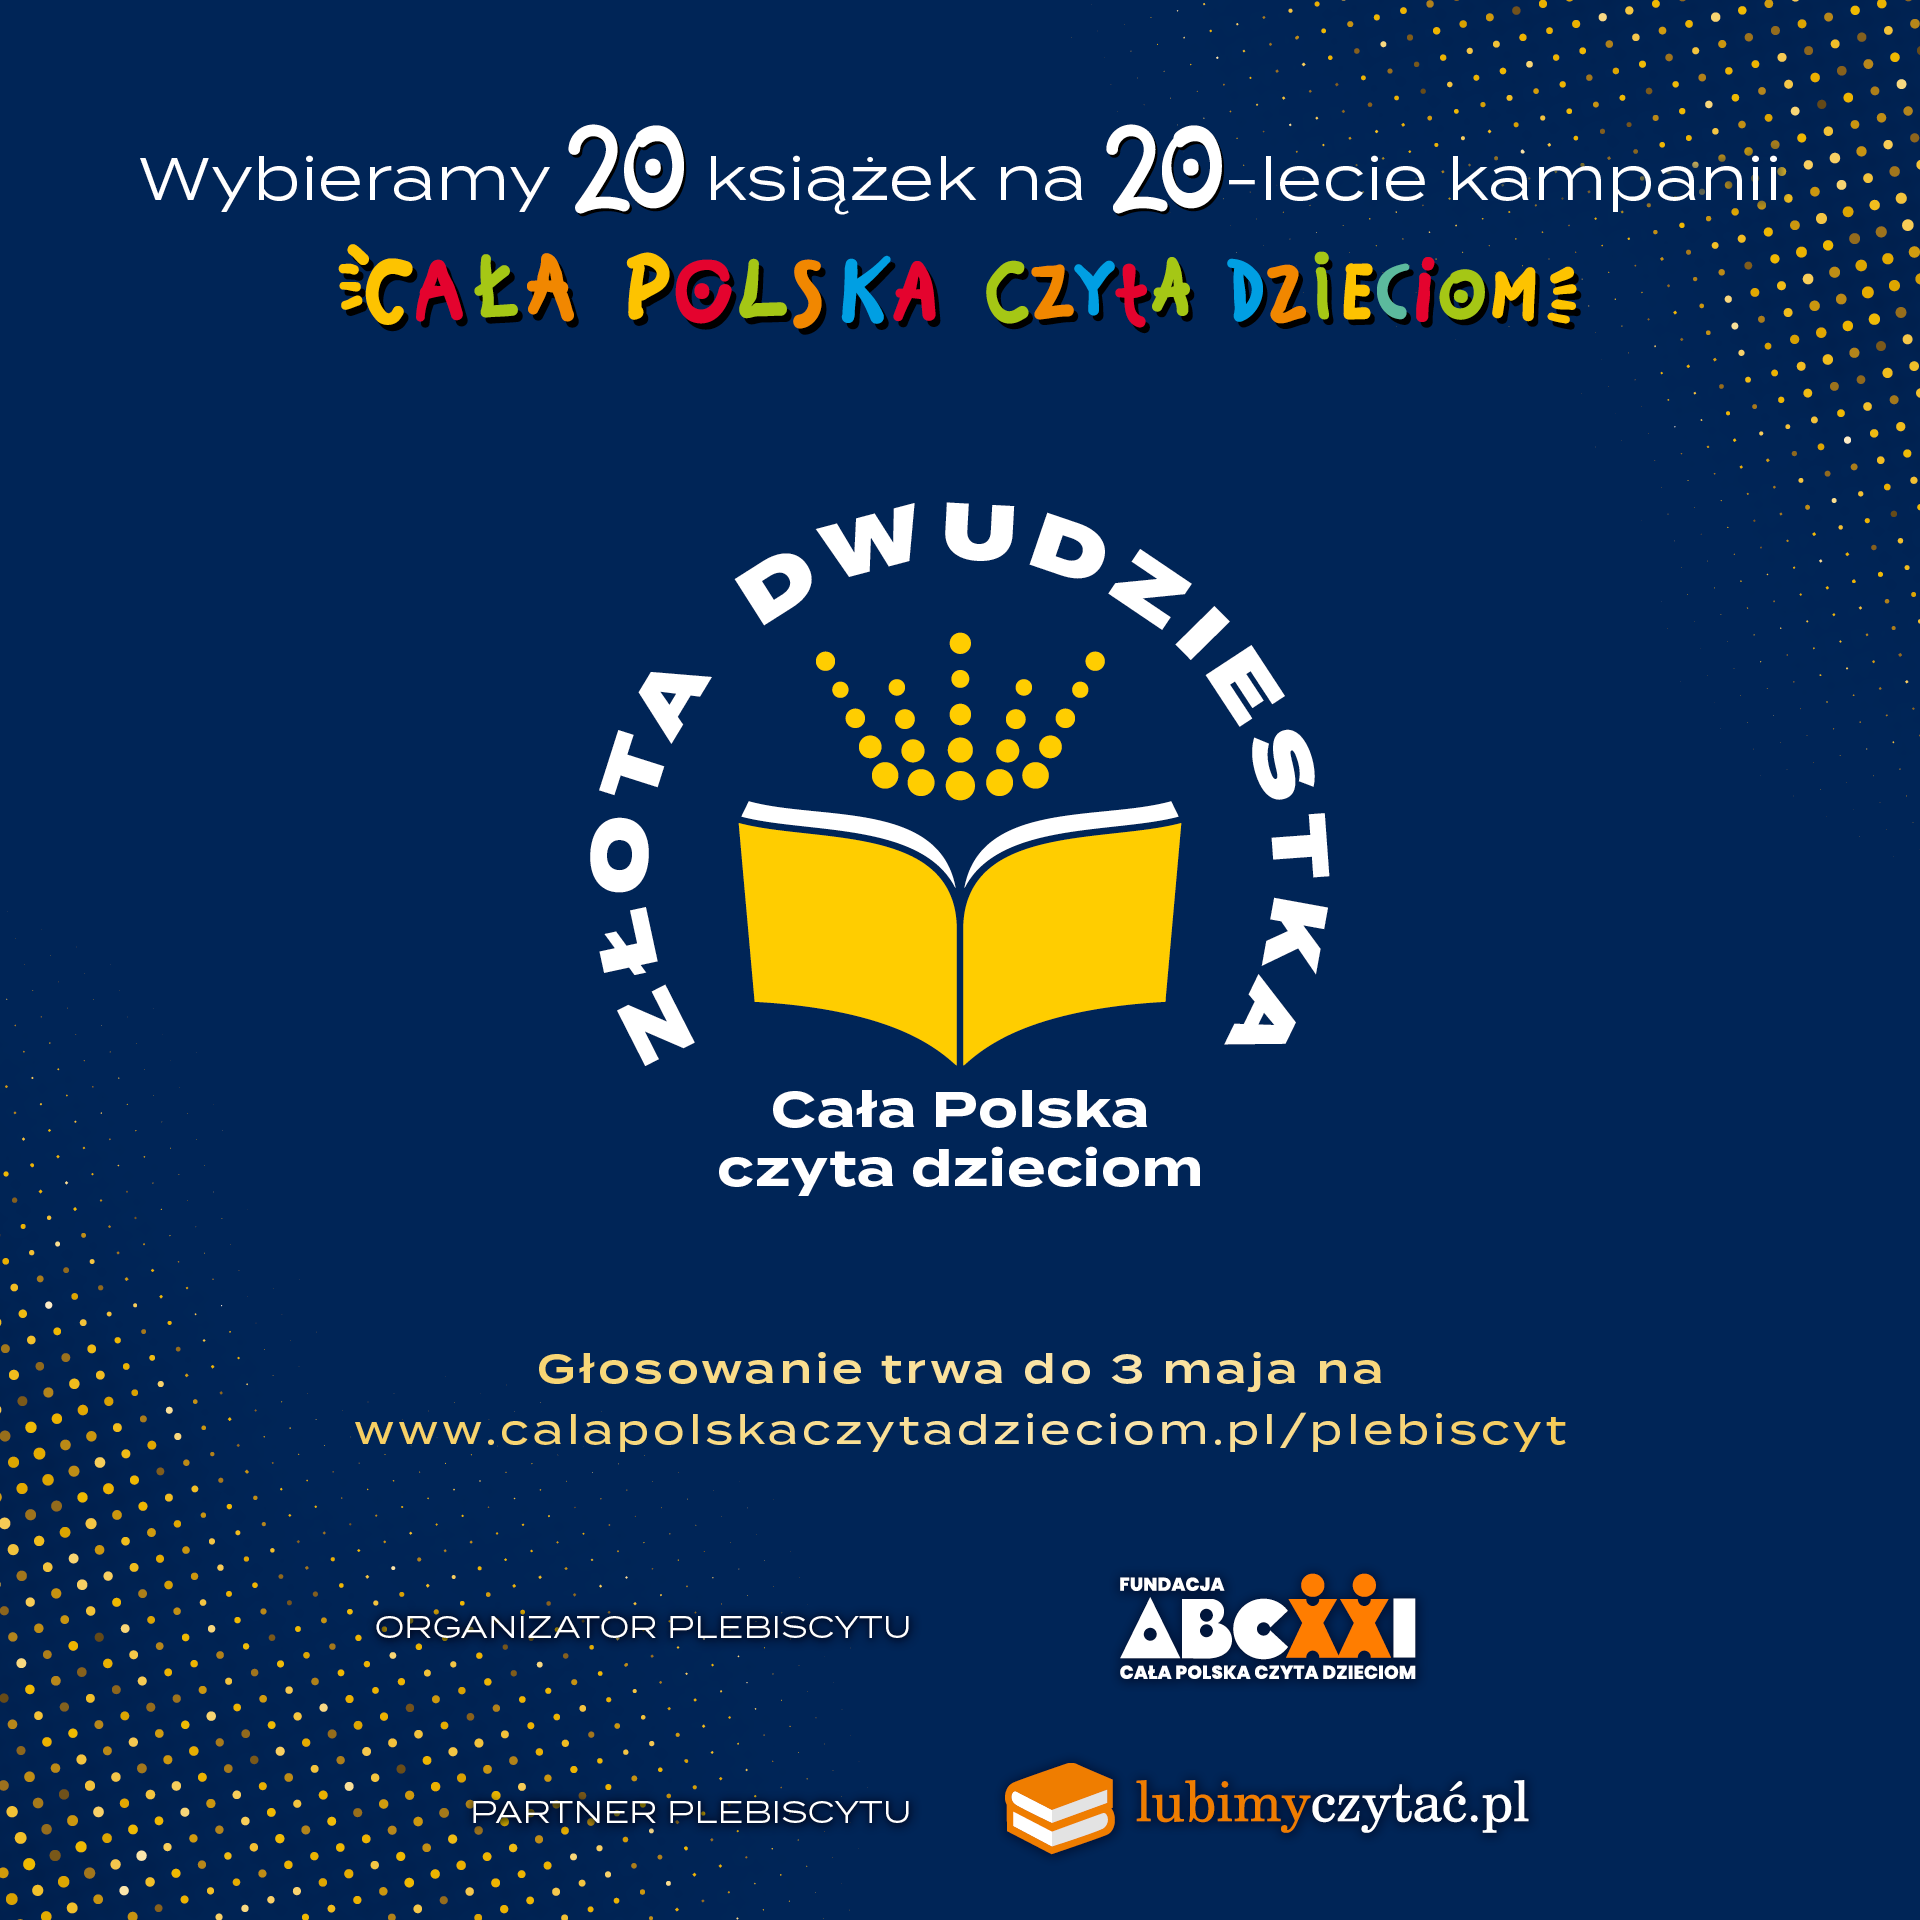 Fundacja ABCXXI – Cała Polska czyta dzieciom